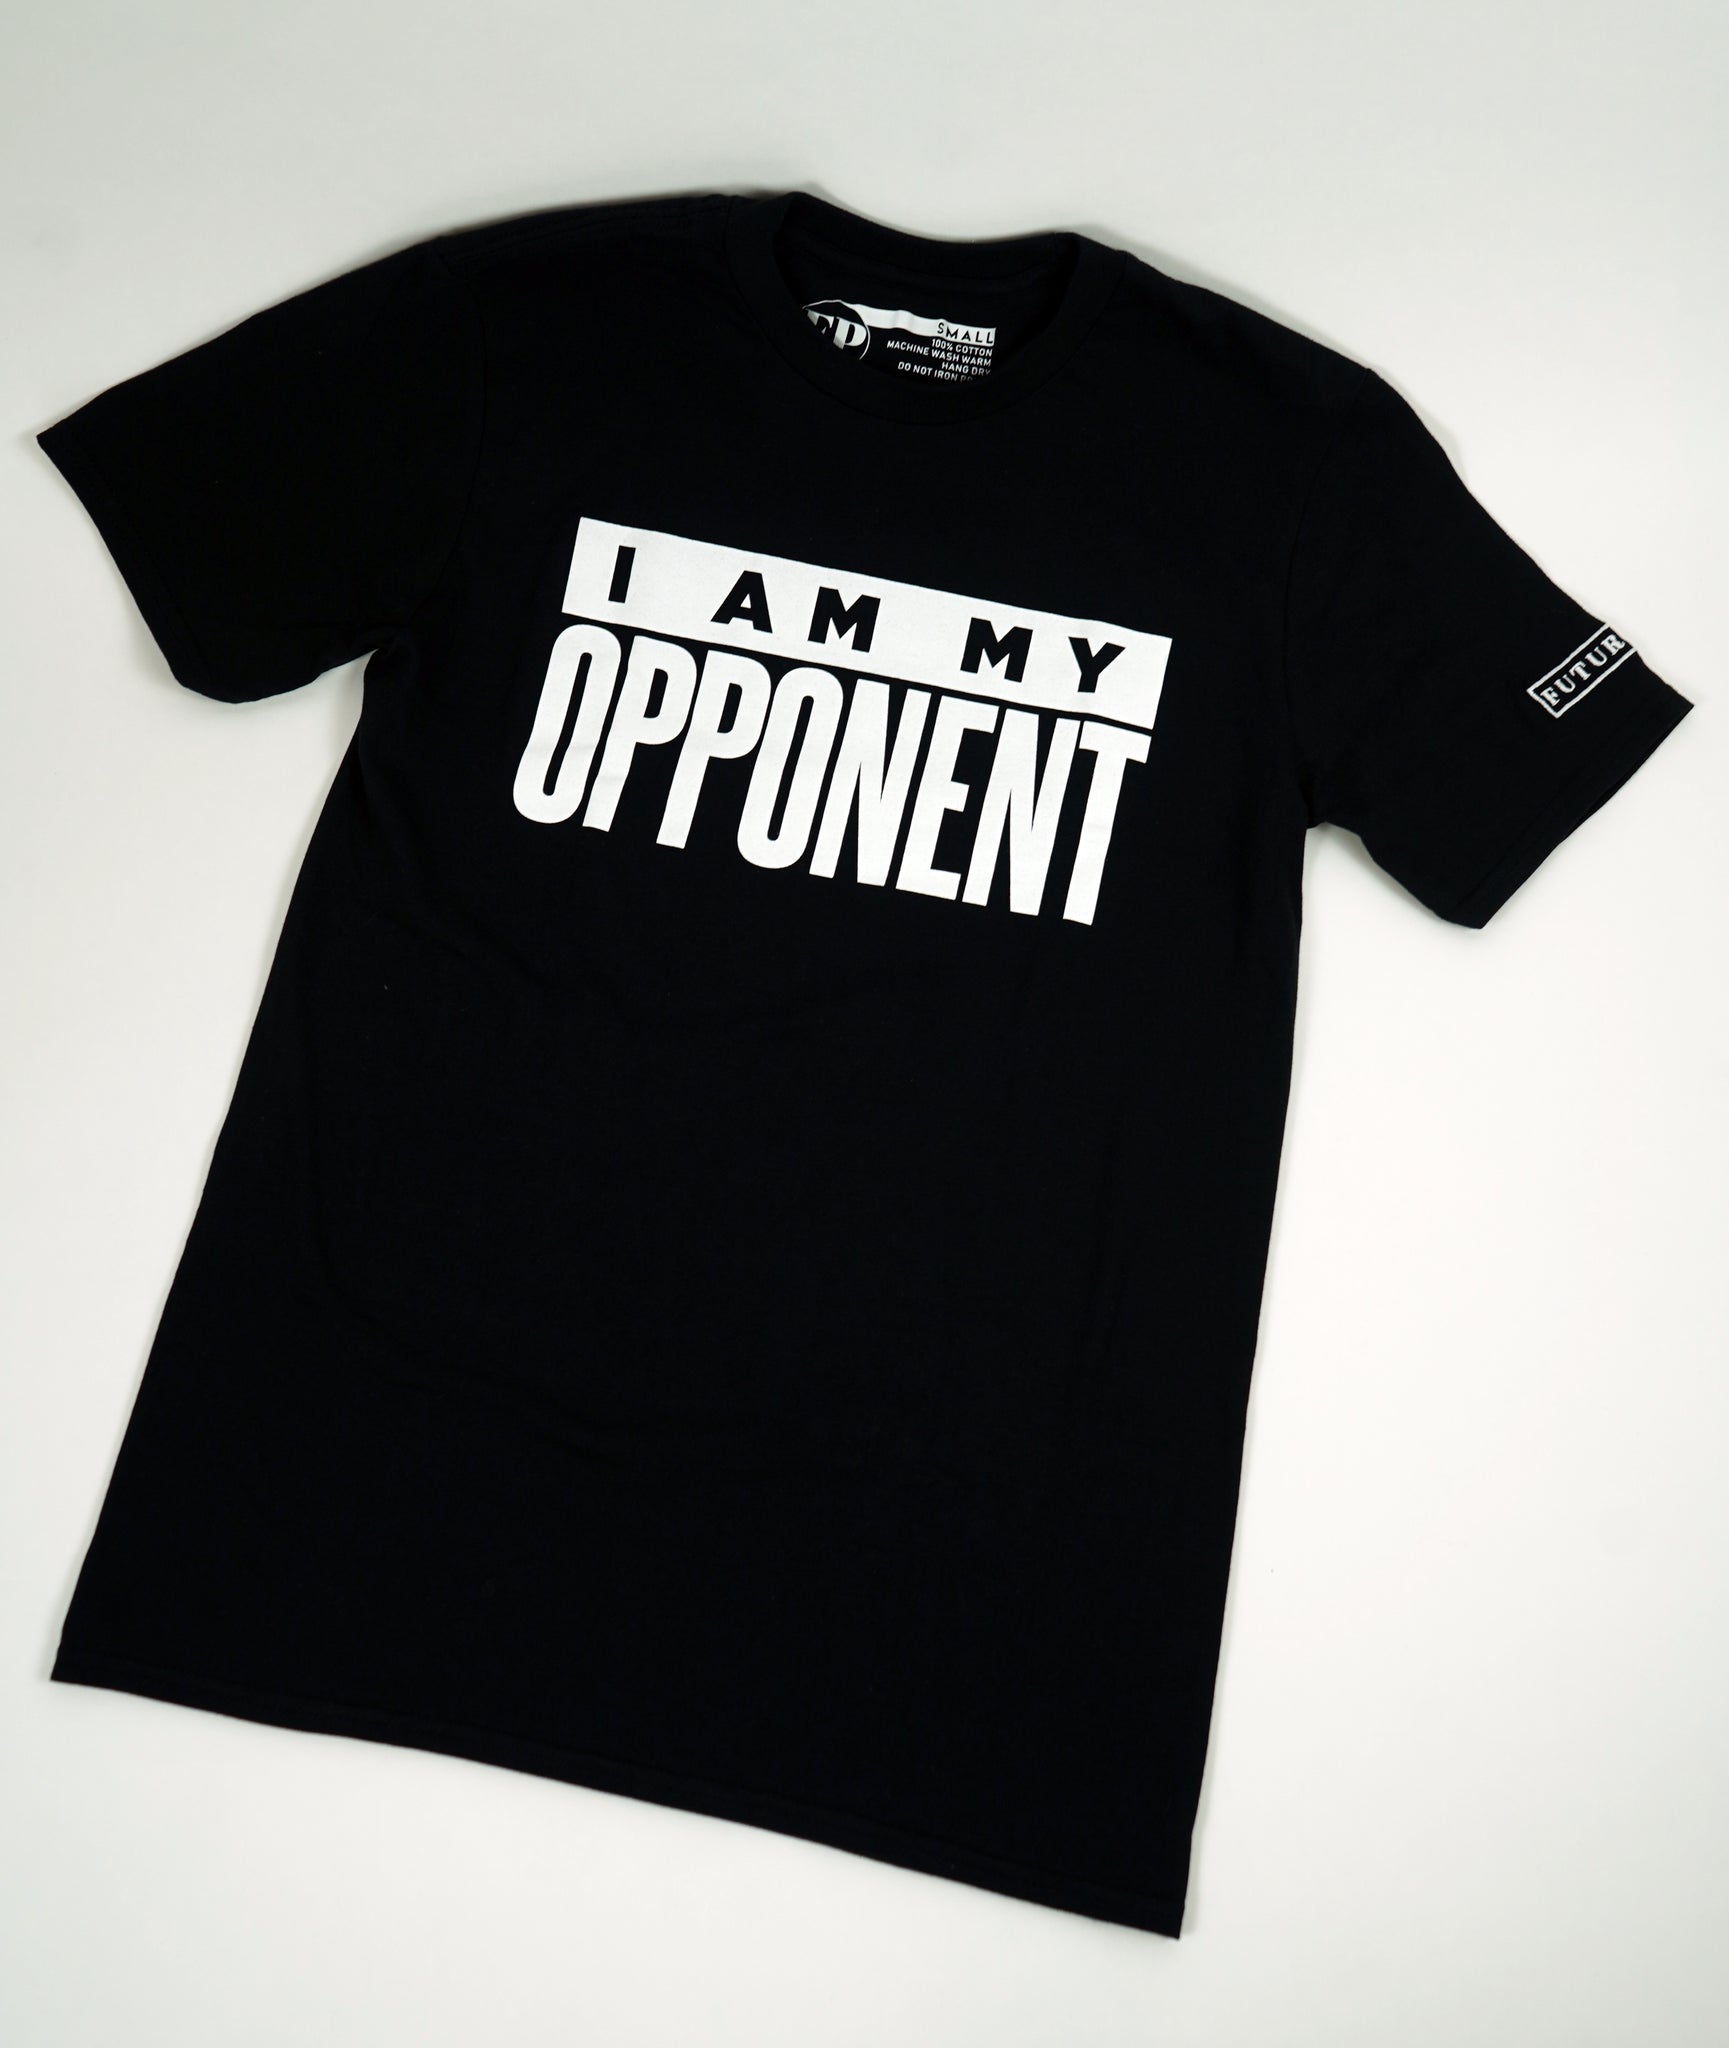 Opponent - Mens Black T-Shirt